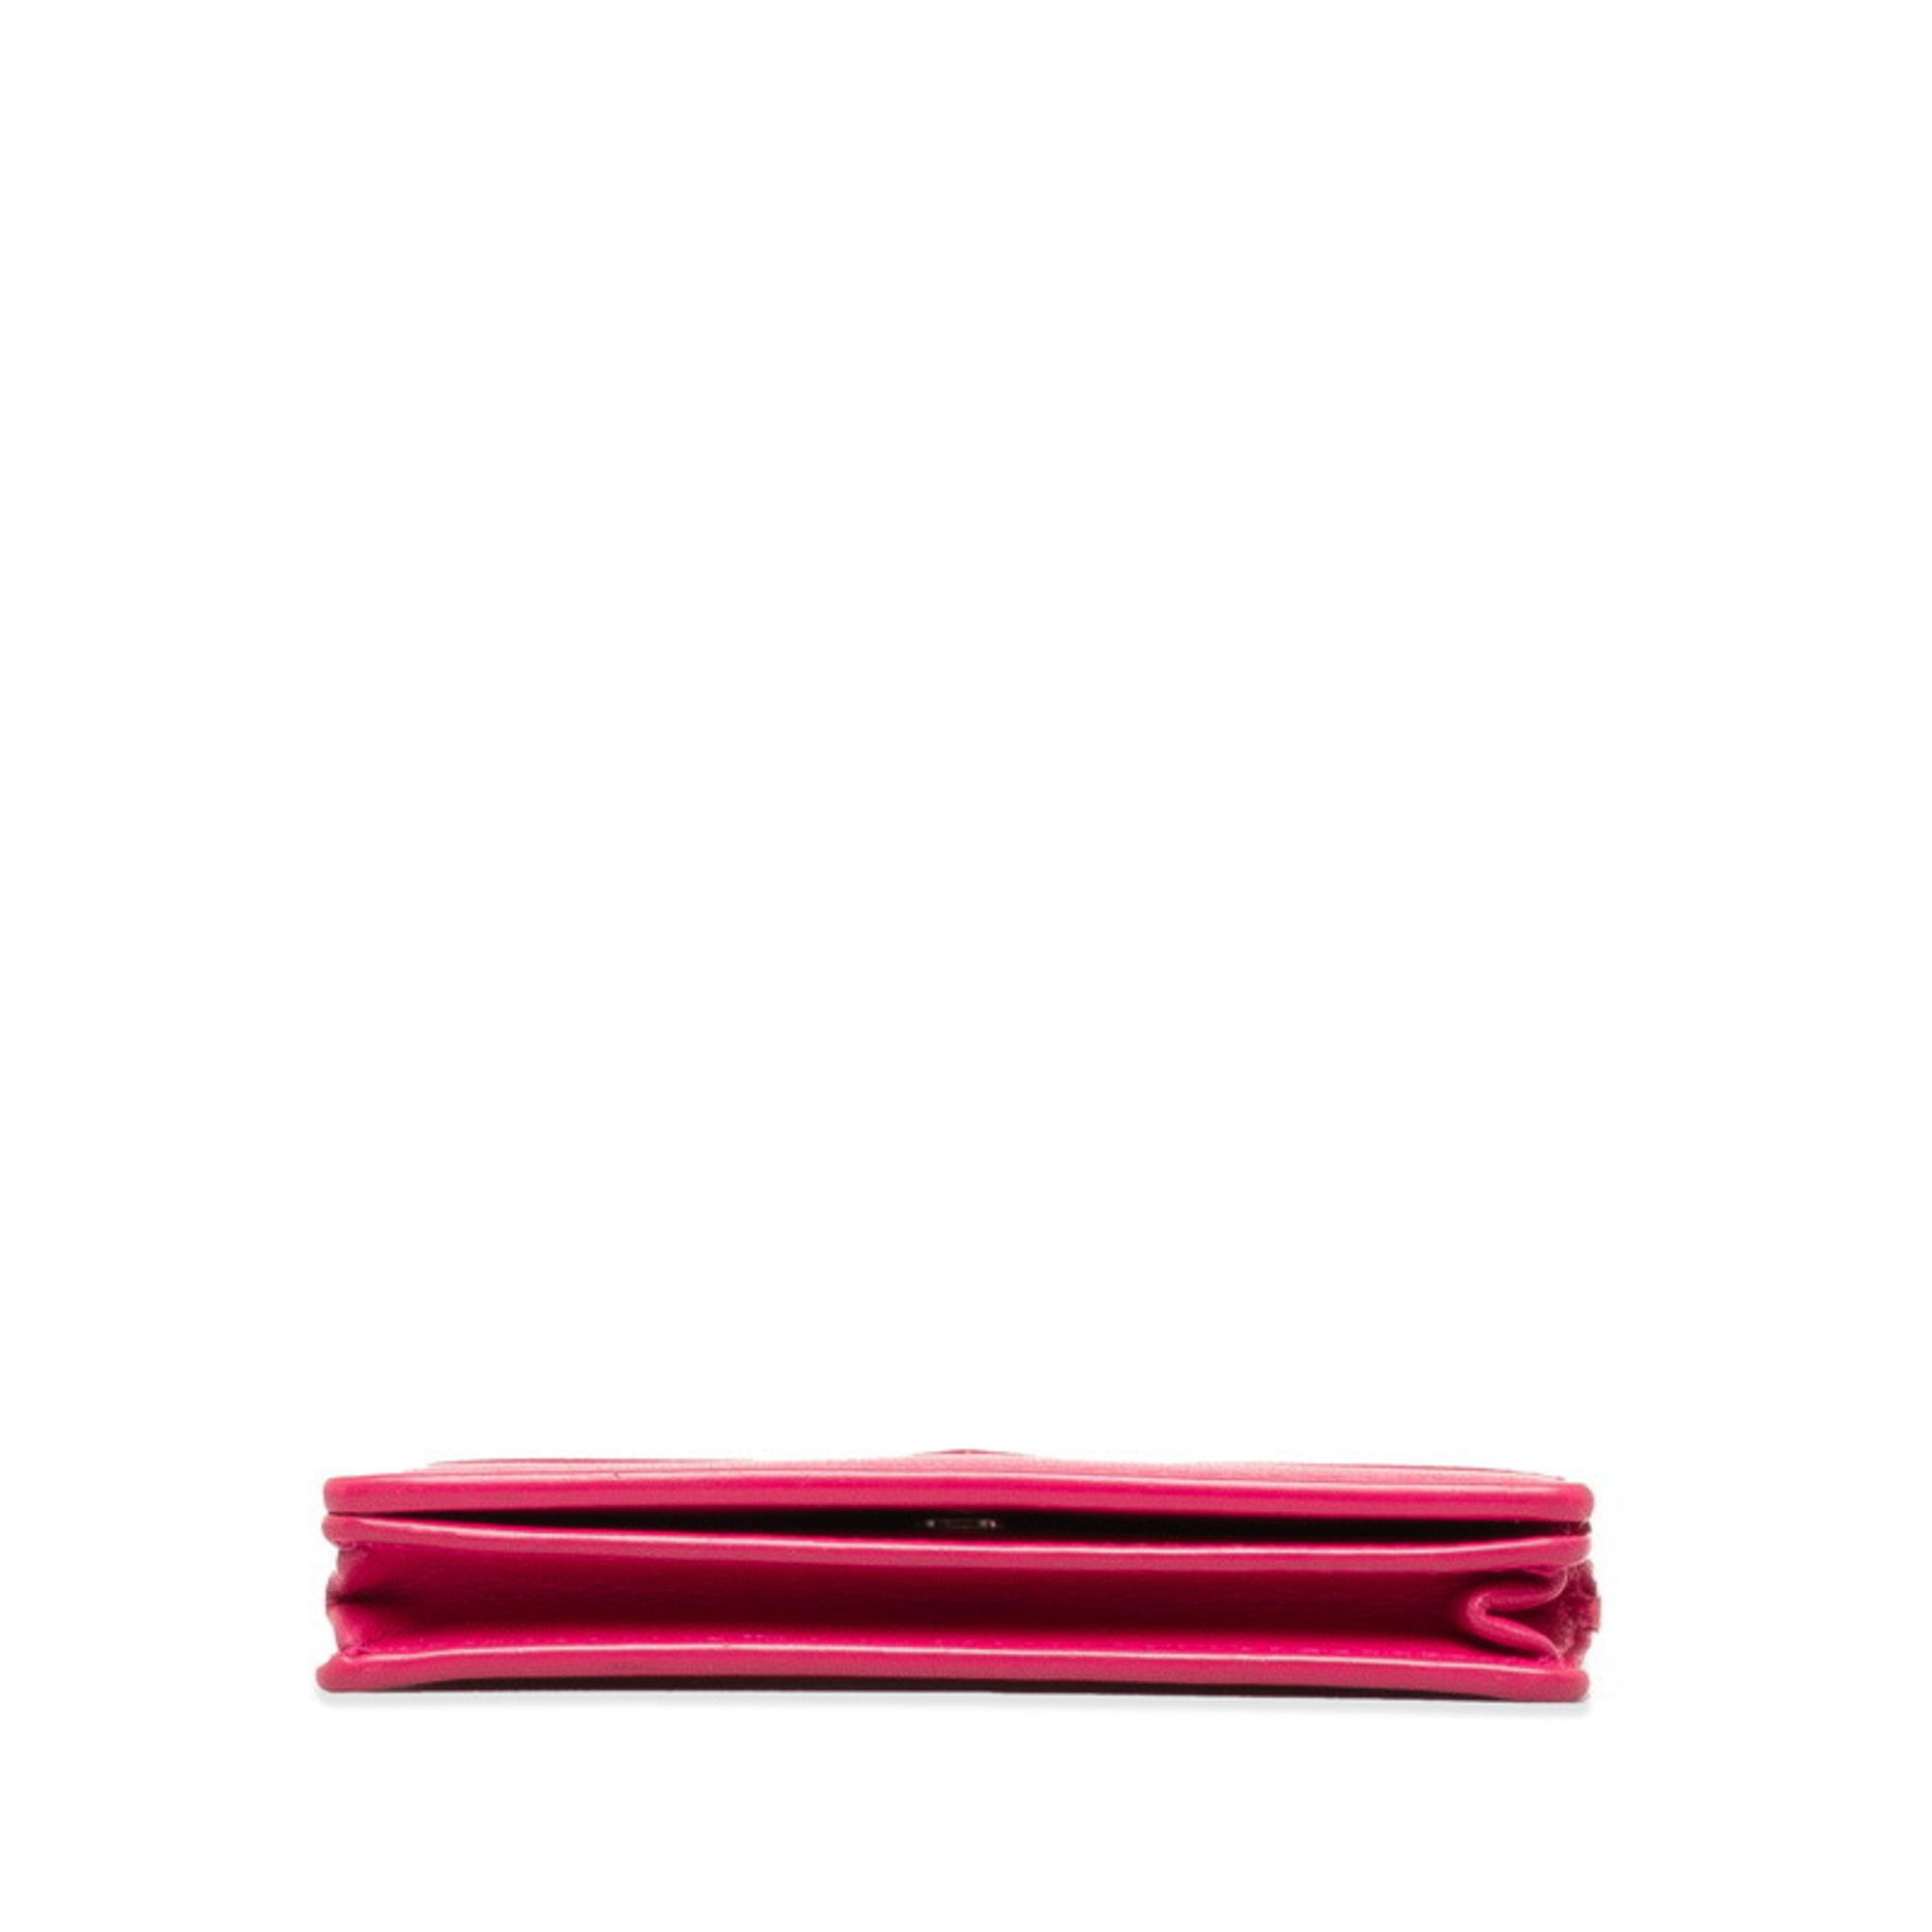 Balenciaga Card Case, Pass Business Holder 499201 Pink Leather Women's BALENCIAGA